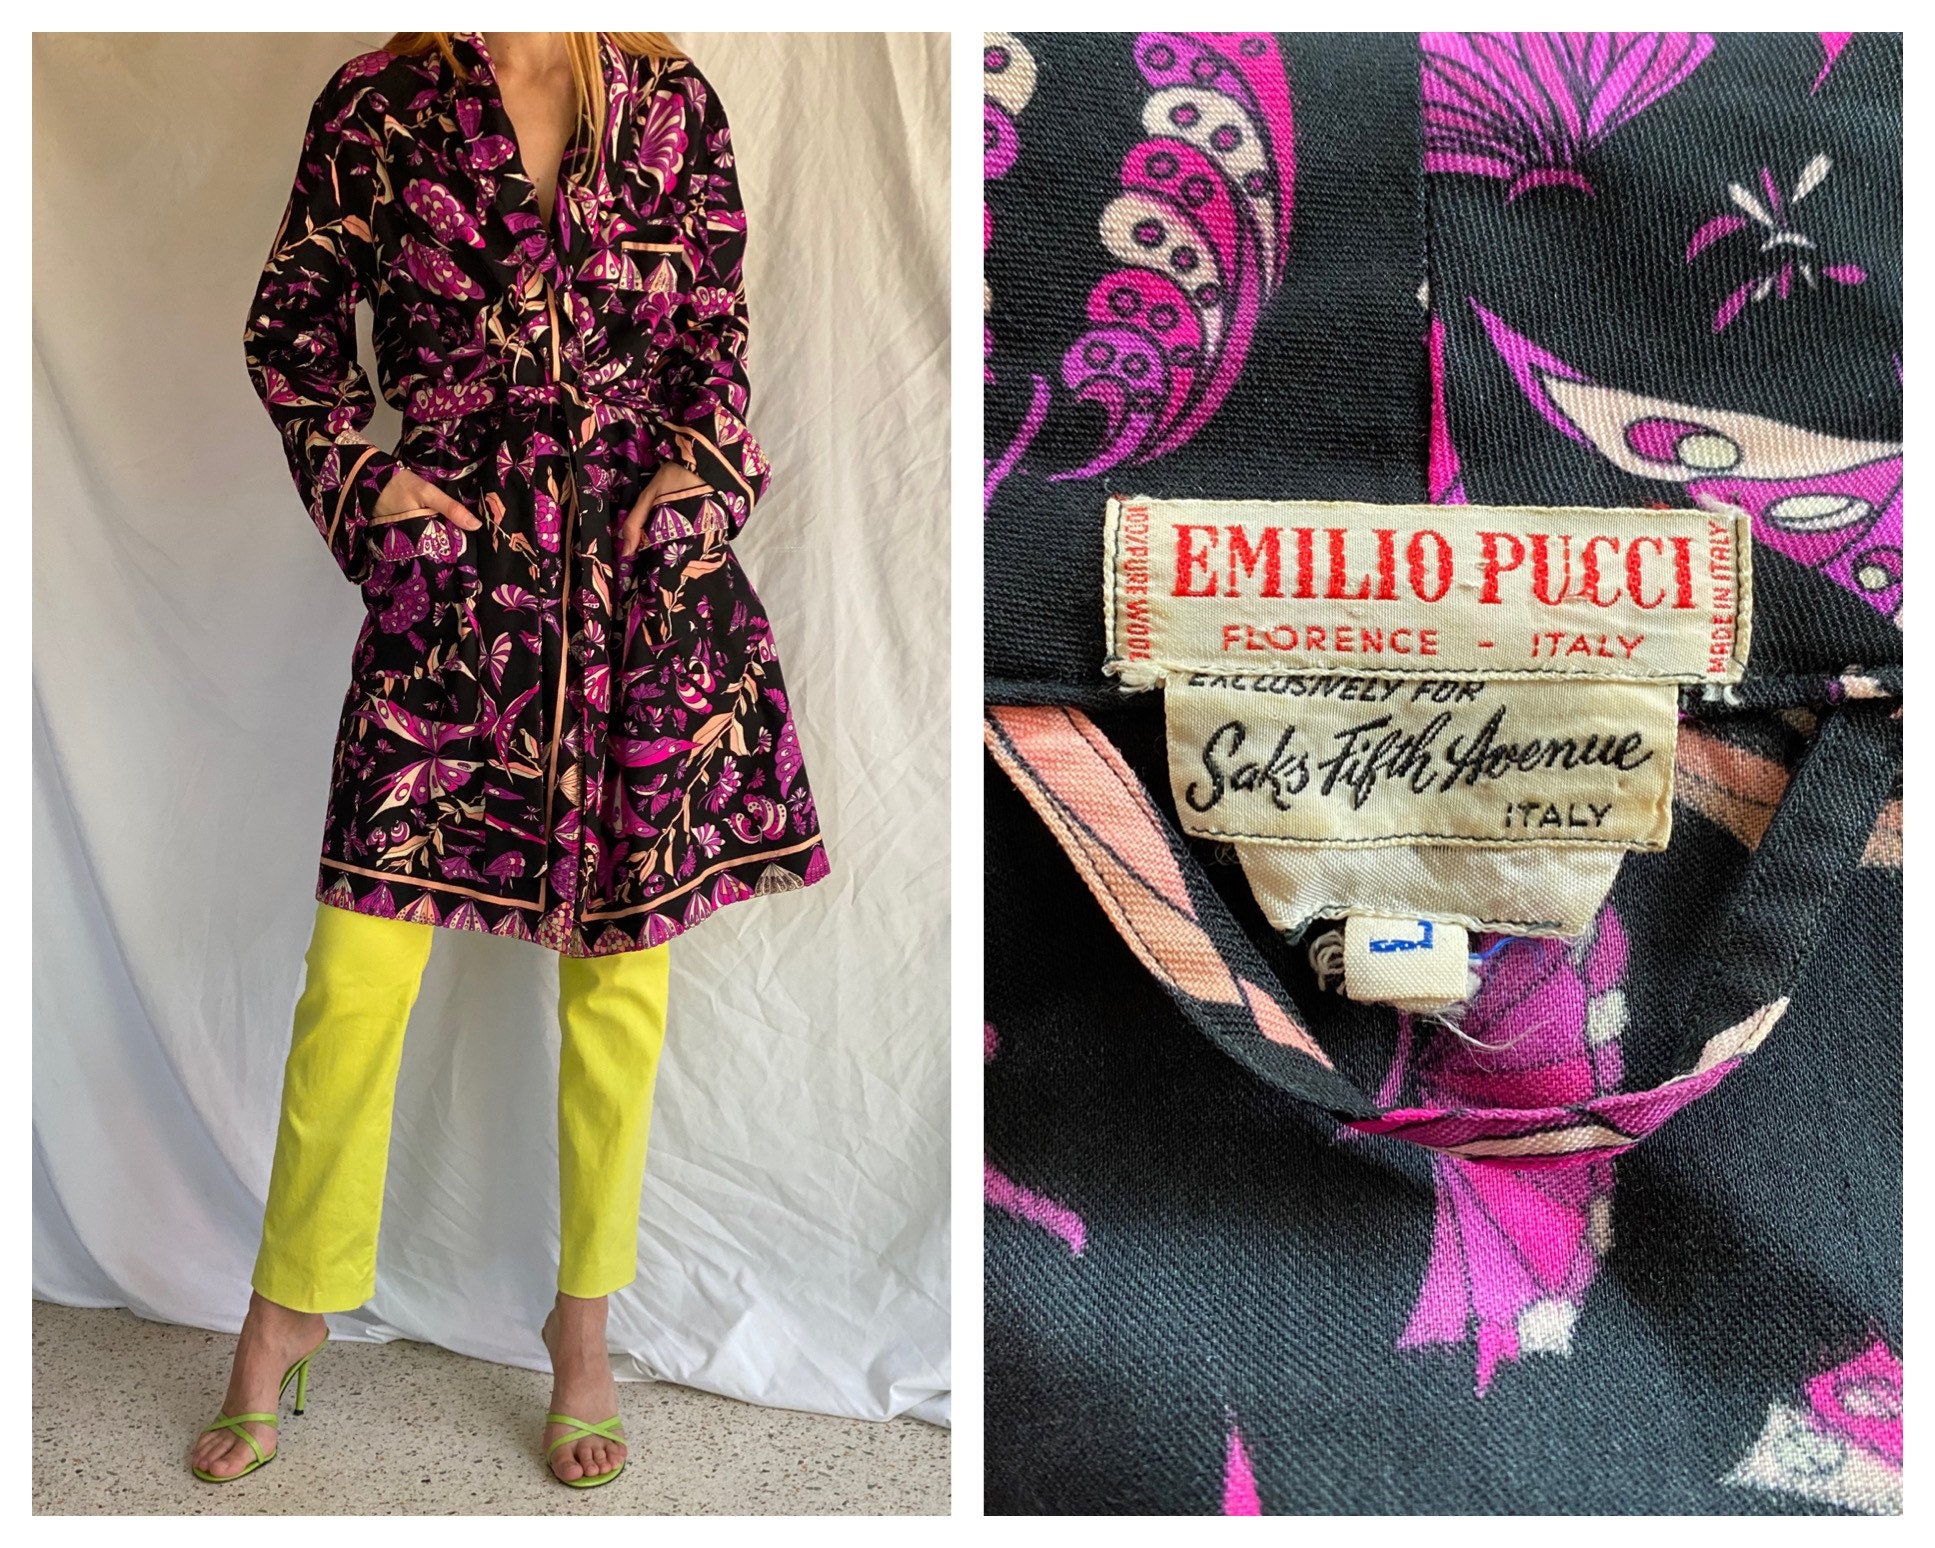 Emilio Pucci Cotton 'Swirl' Print Pocket Sq